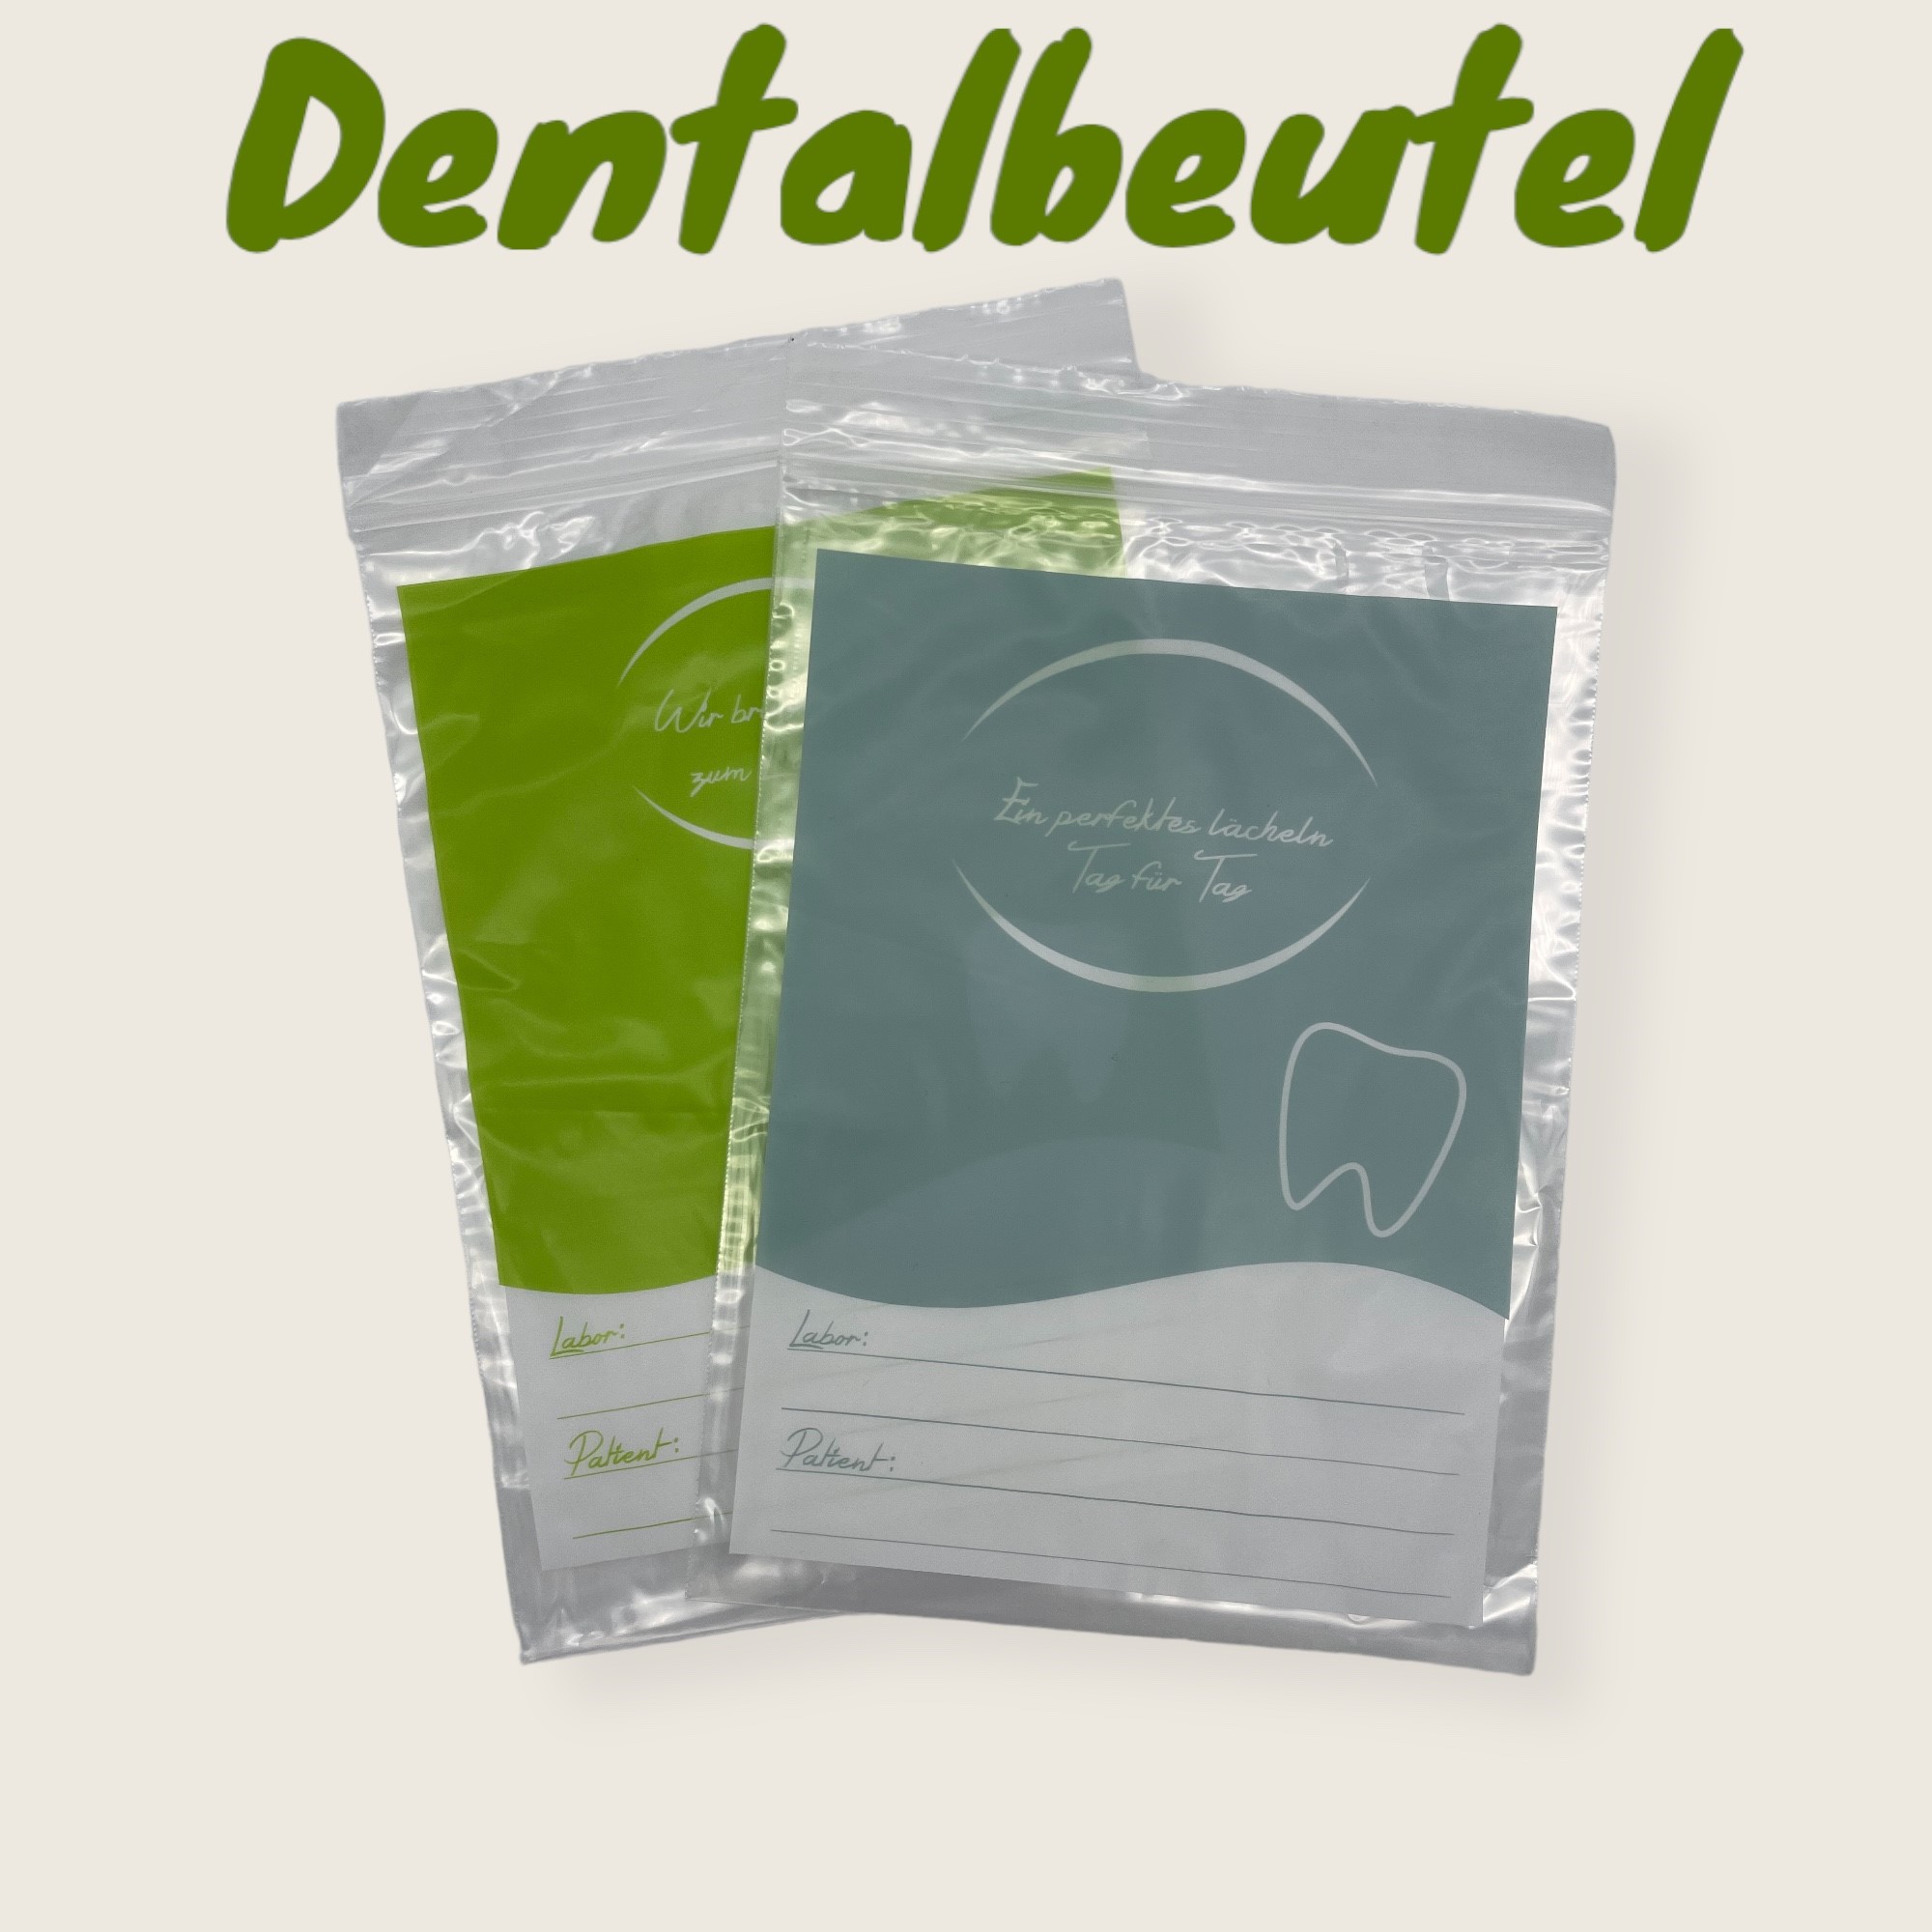 Dentalbeutel - BFT Verpackungen GmbH